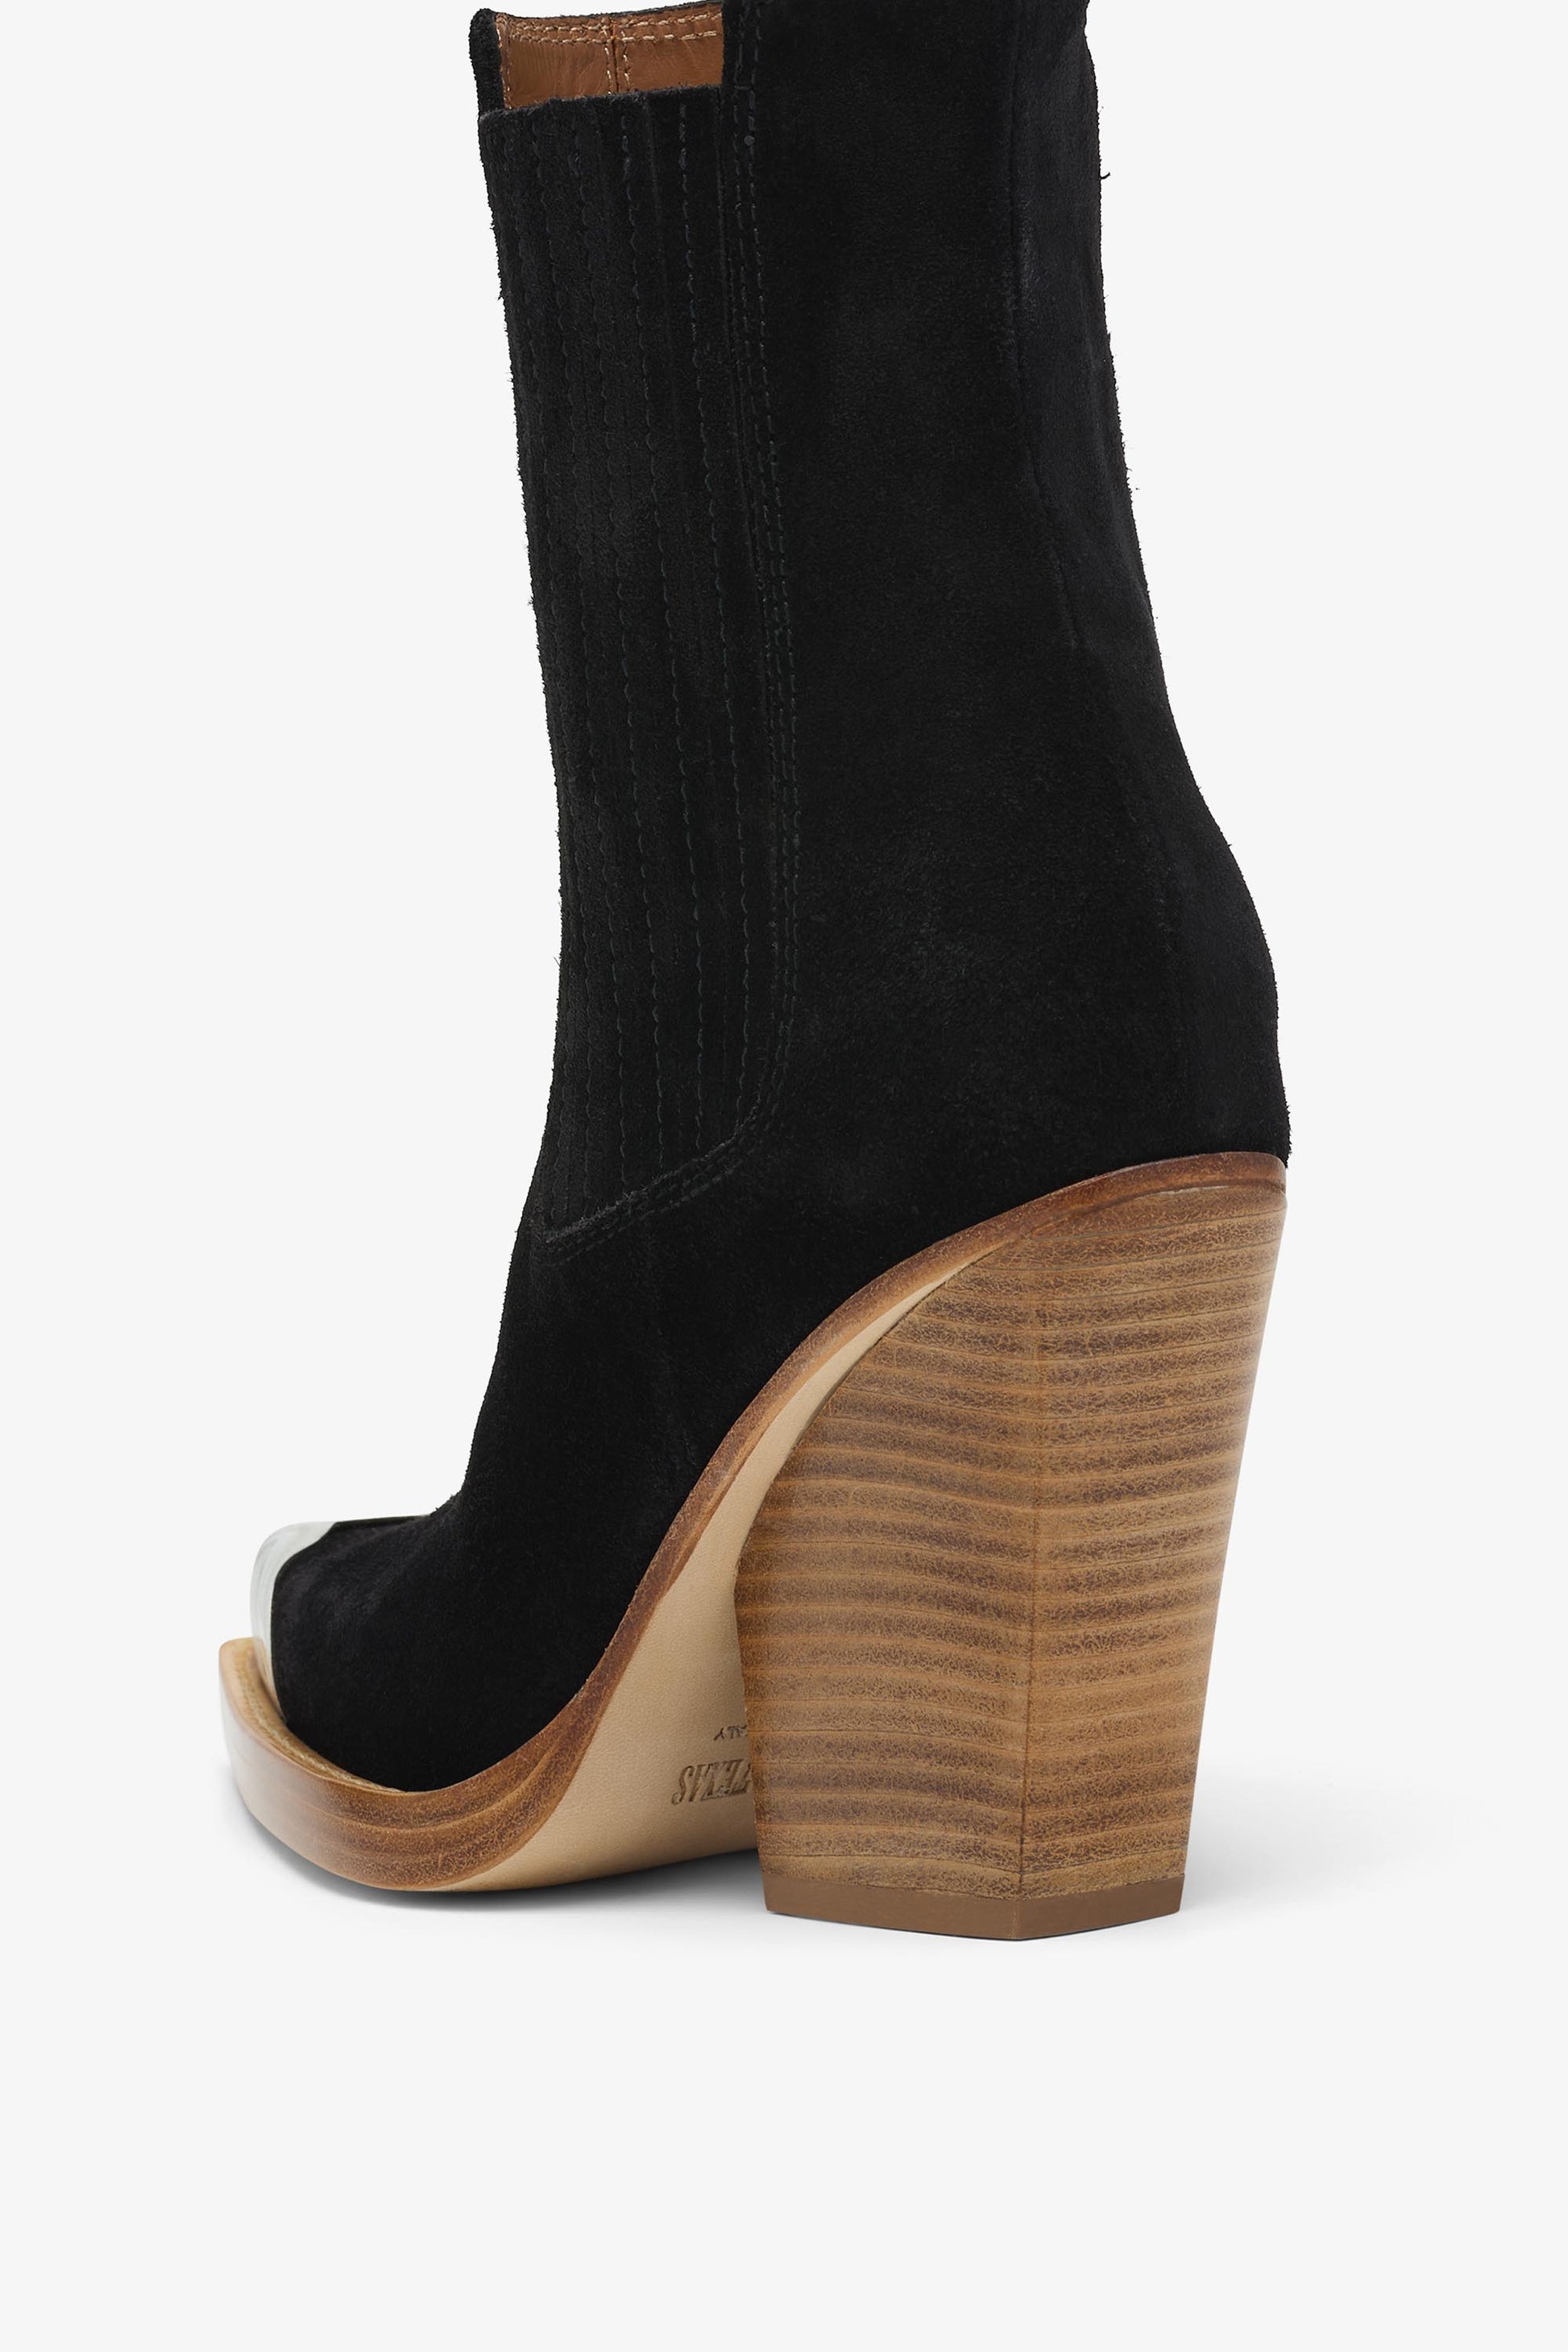 Black suede embellished toe boot